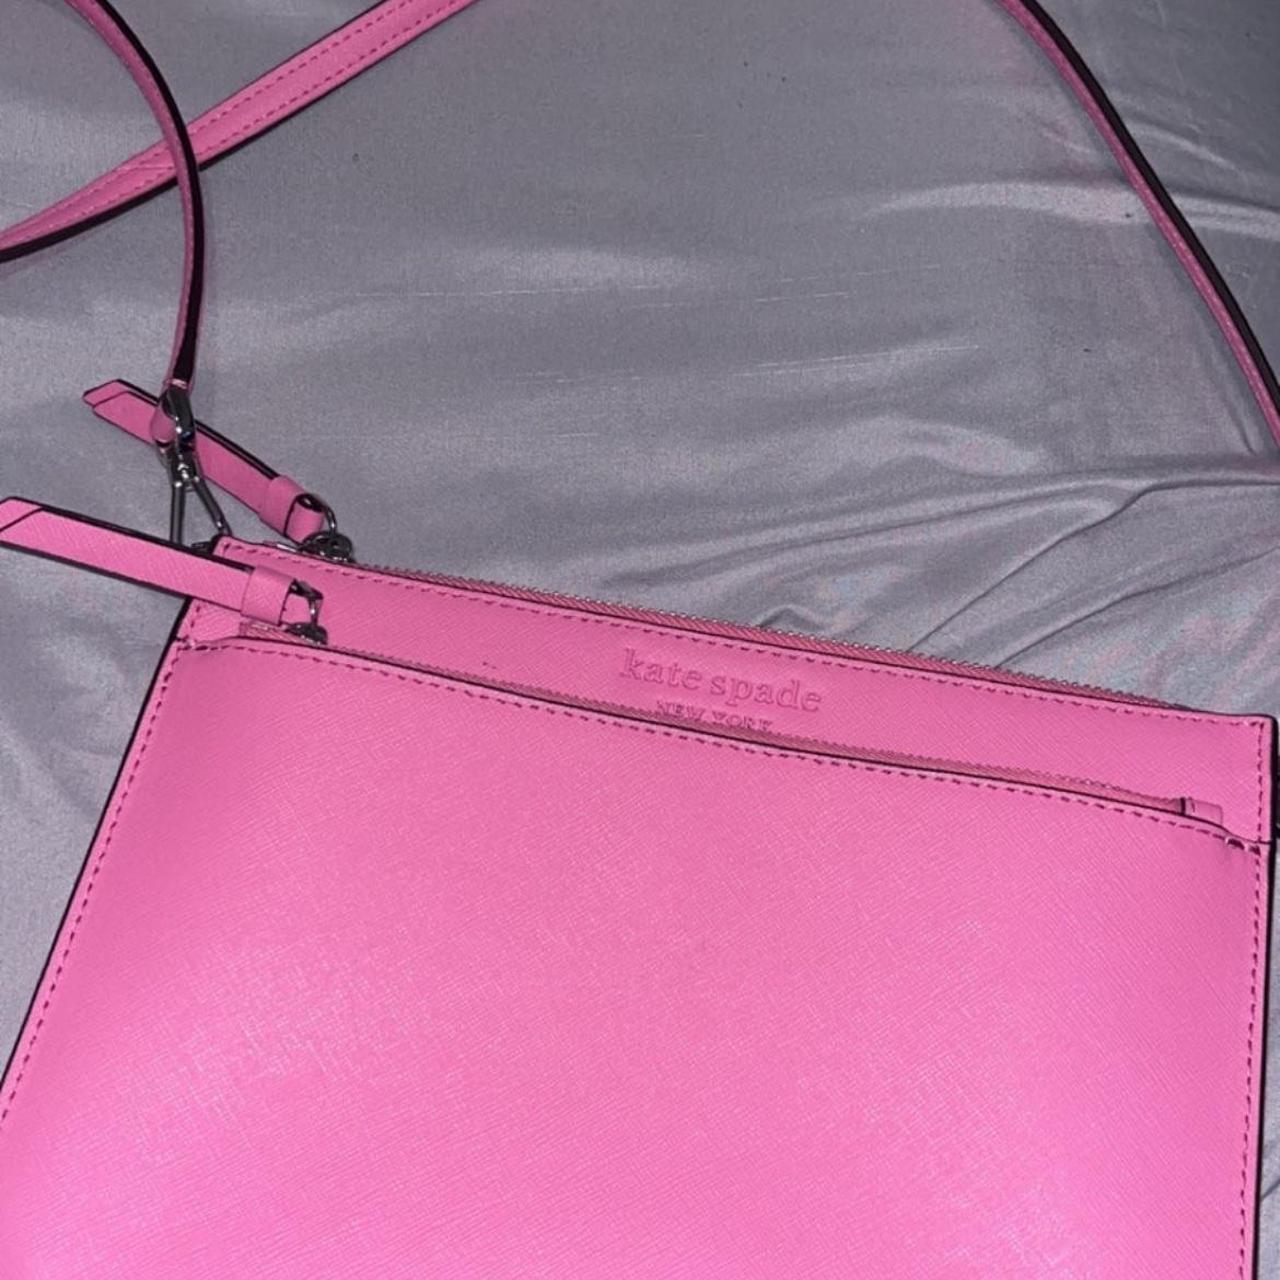 Kate spade shoulder bag - hot pink inside - two - Depop